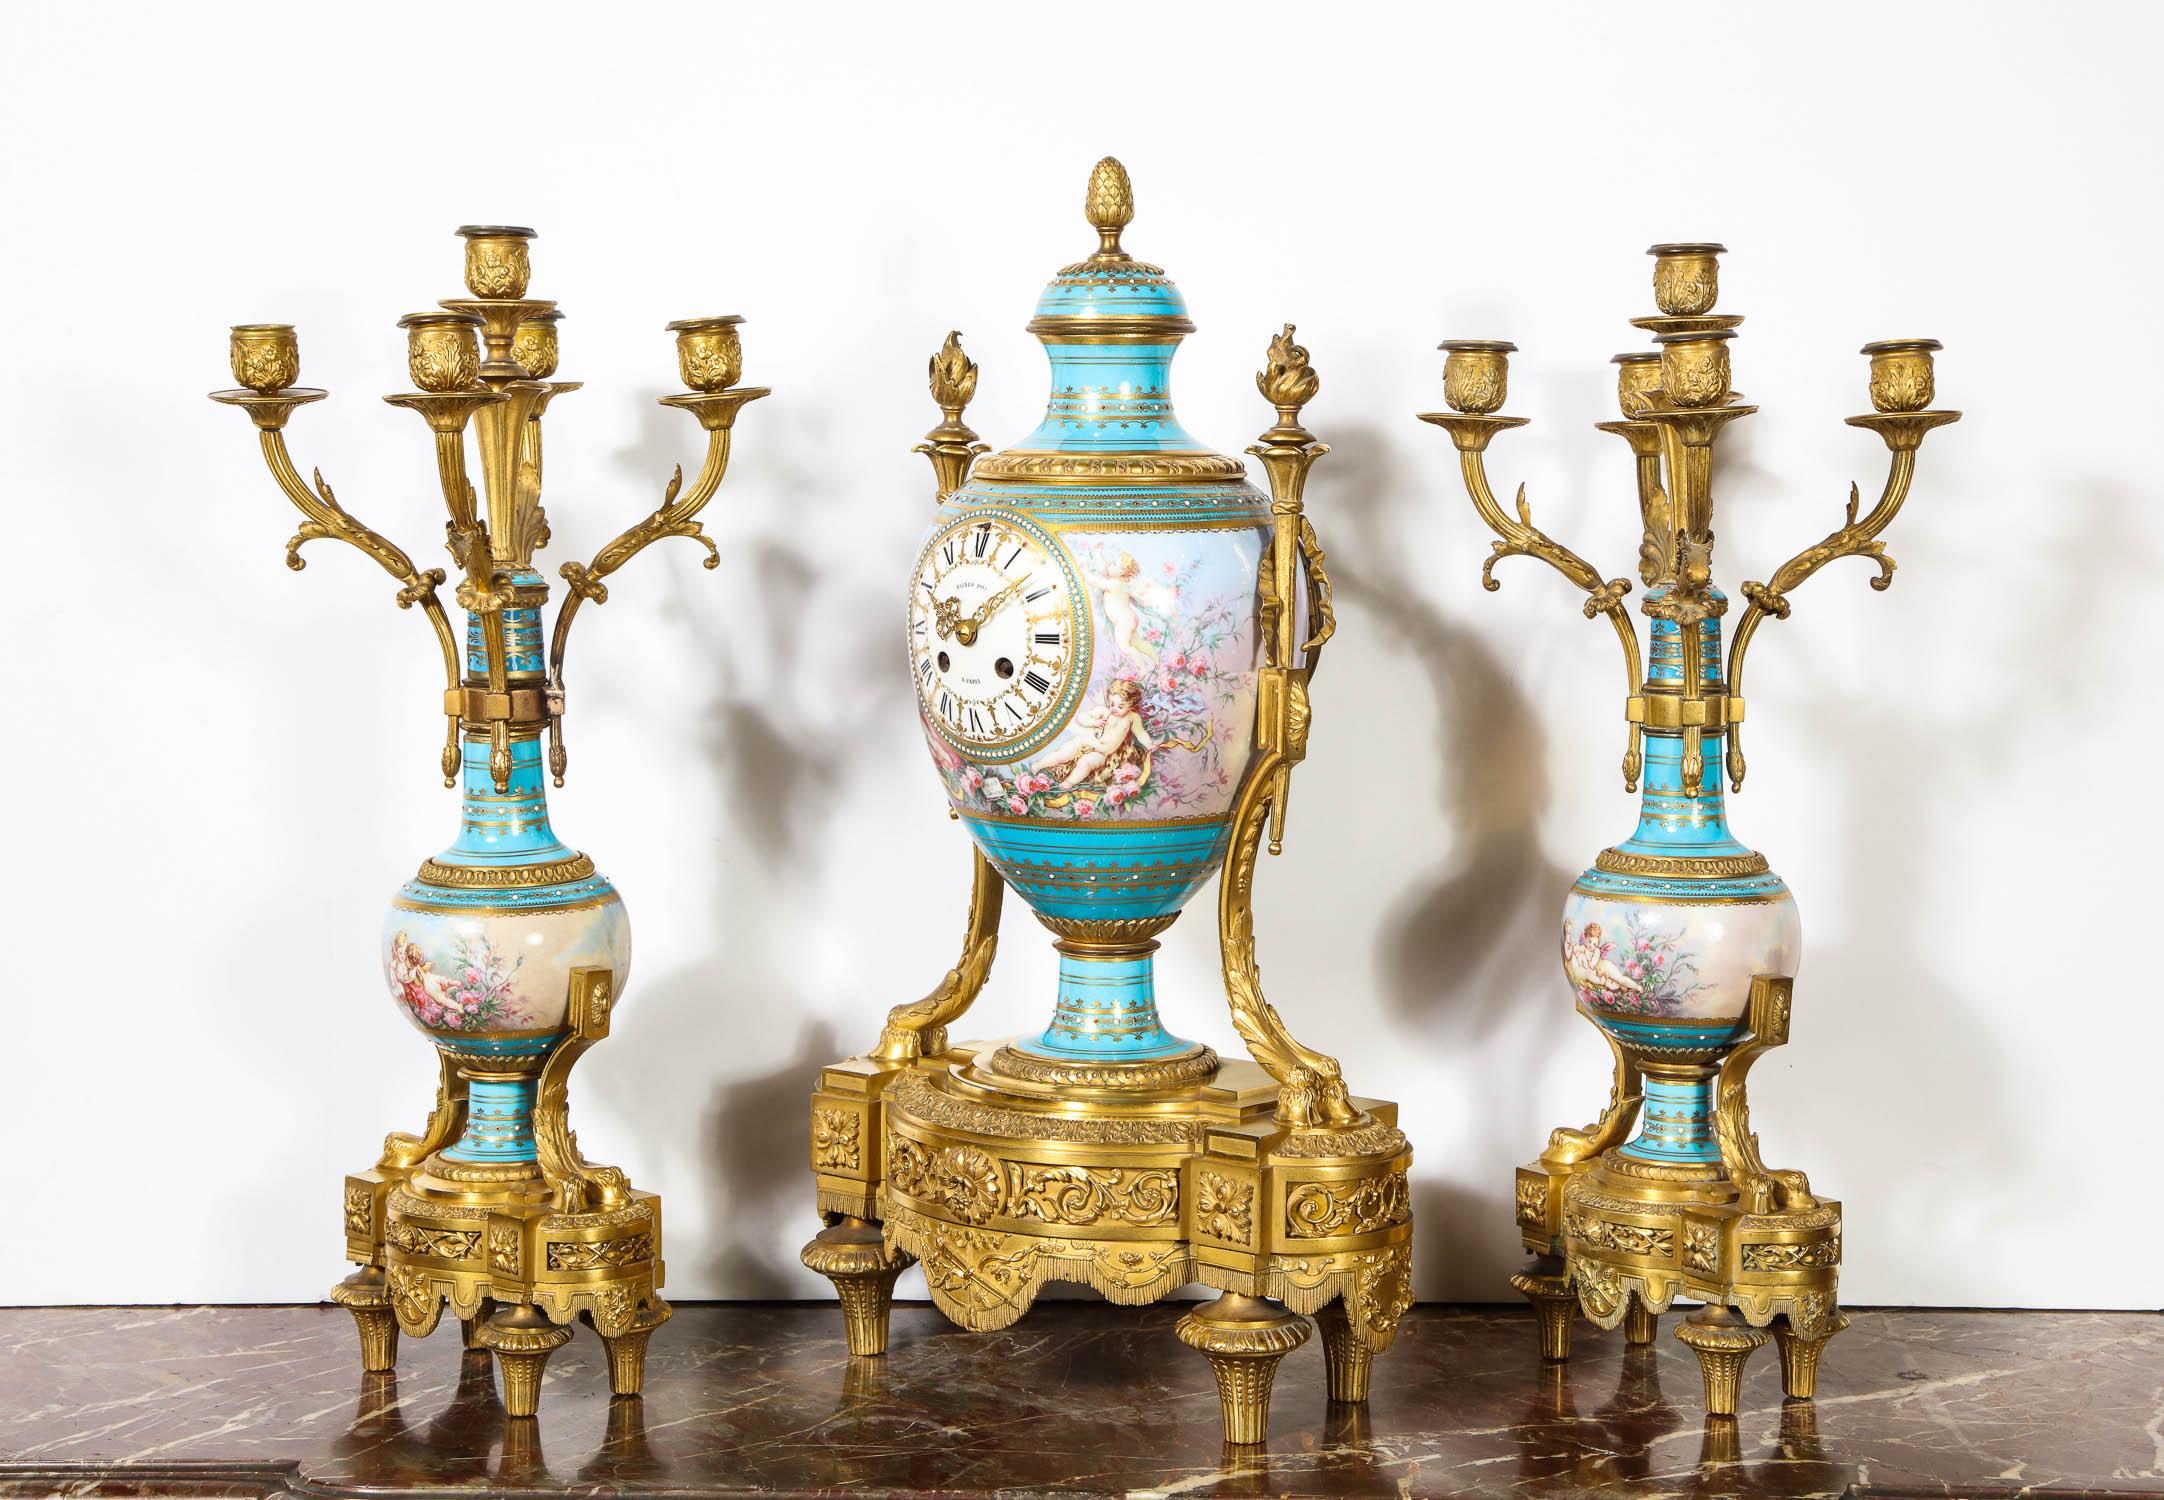 Exceptionnelle pendule en porcelaine de Sèvres montée en bronze doré et ornée de bijoux turquoise par CIRCA, Paris, vers 1880.

Comprenant une horloge en forme de vase et une paire de candélabres à cinq lumières. Le bronze doré est de très grande